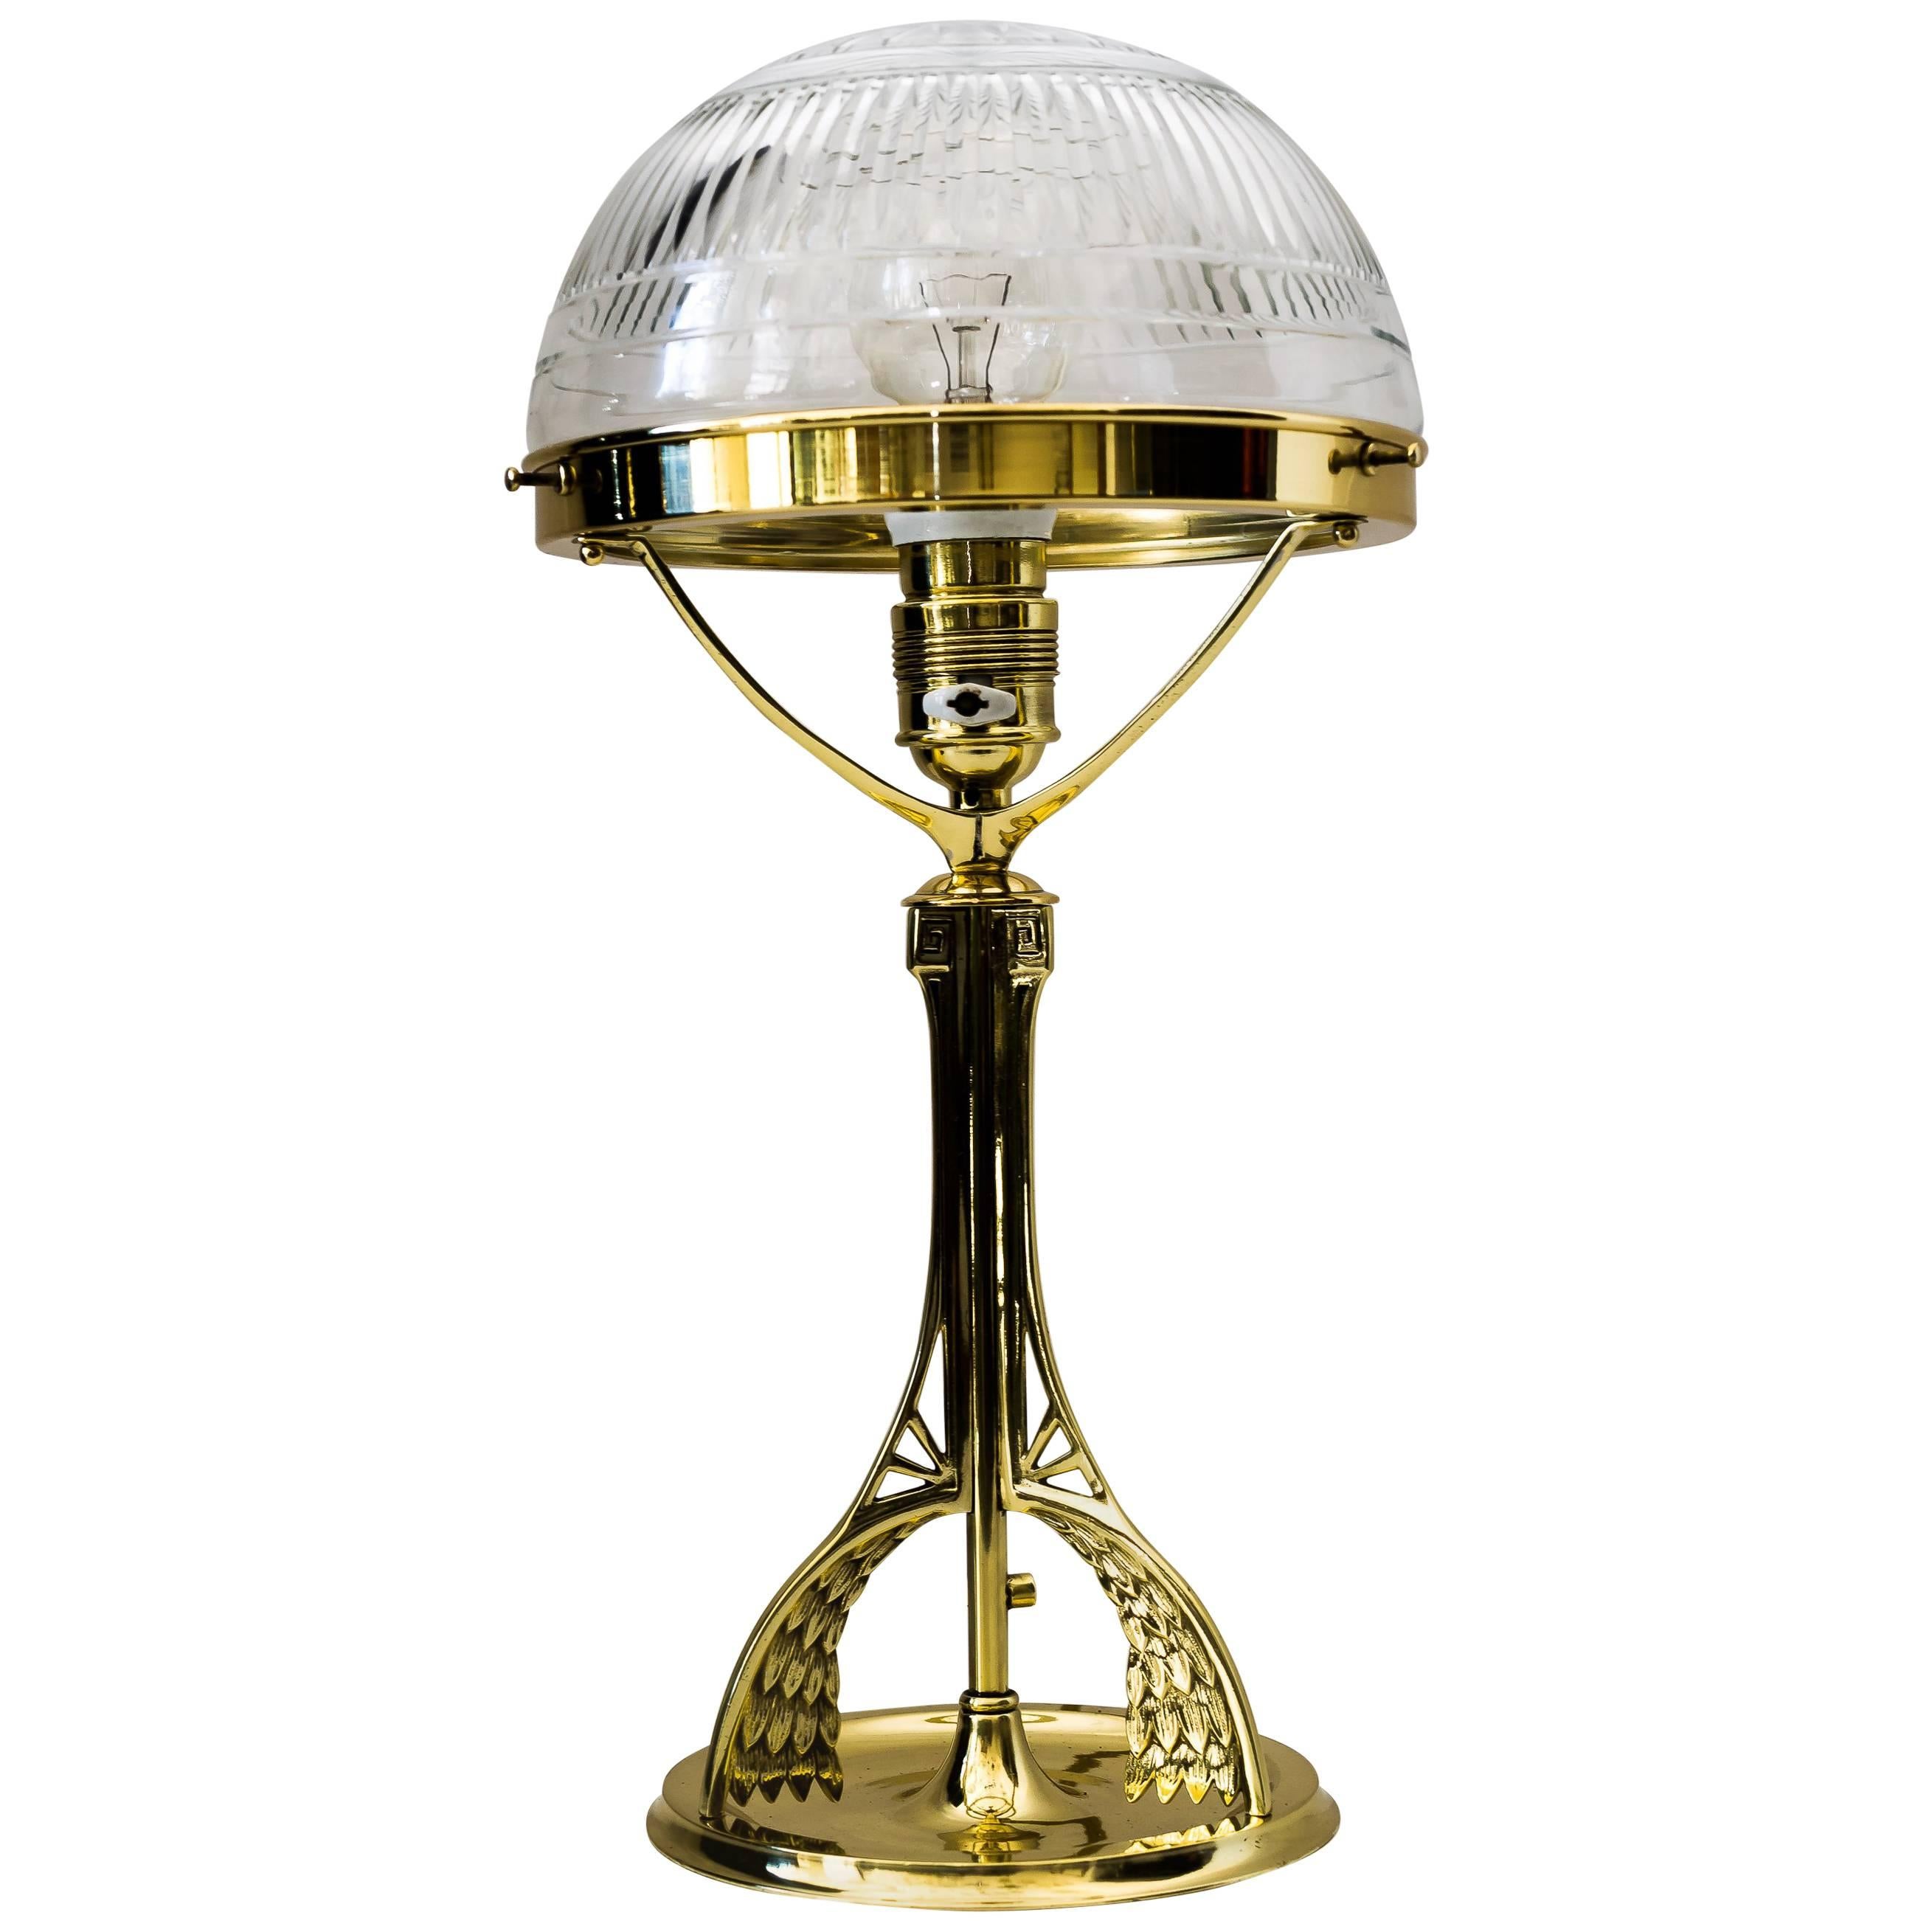 Art Nouveau Table Lamp with Original Cut-Glass, circa 1908 For Sale